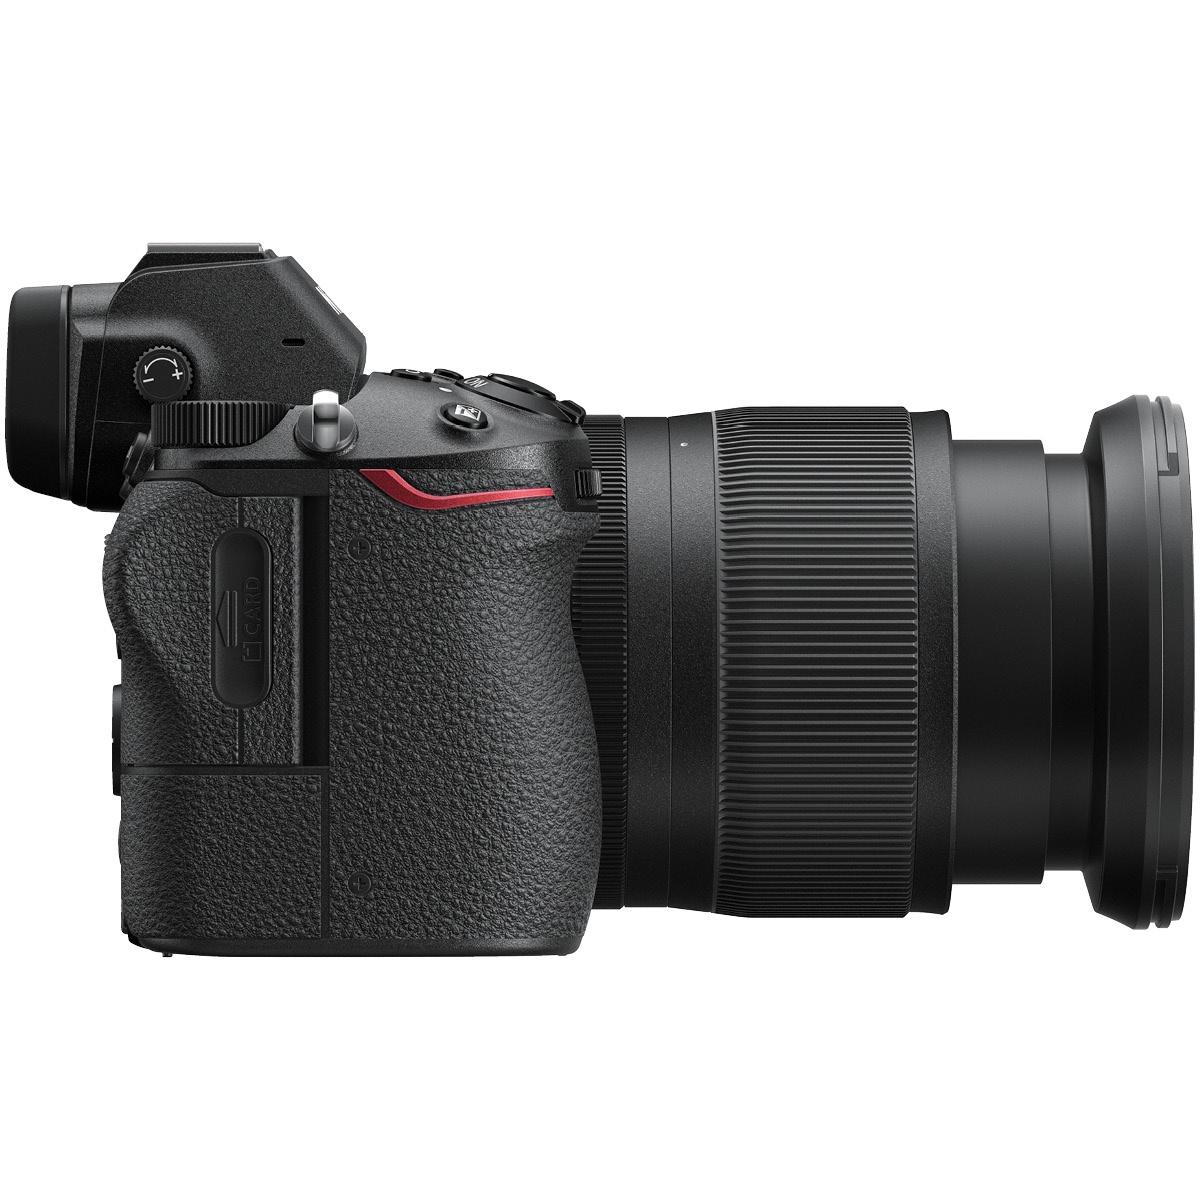 Nikon Z7 Kit mit 24-70 mm 1:4,0